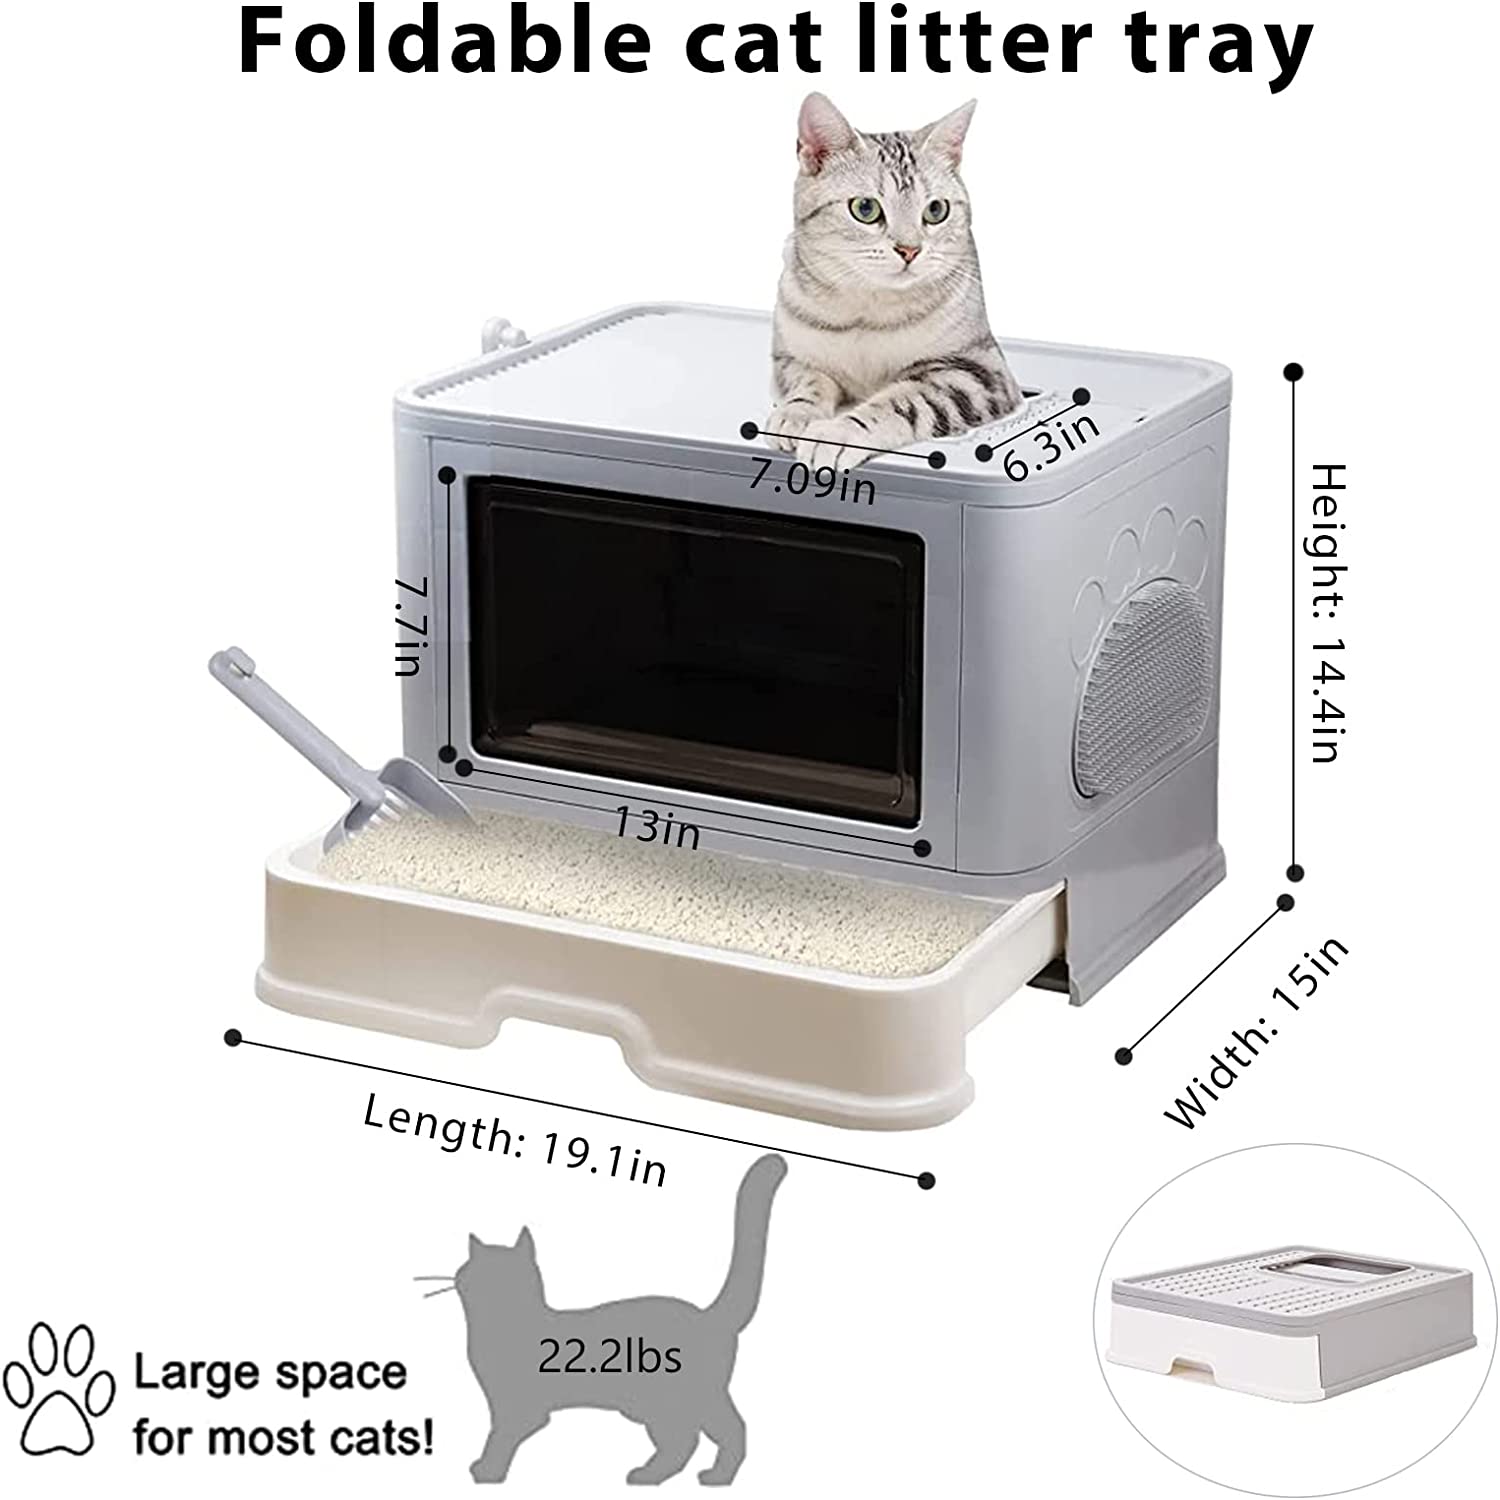  طراحی تاشو جعبه بستر گربه با درب عمدتاً برای نگهداری راحت، نصب و جداسازی، صرفه جویی در فضا و حمل آسان است